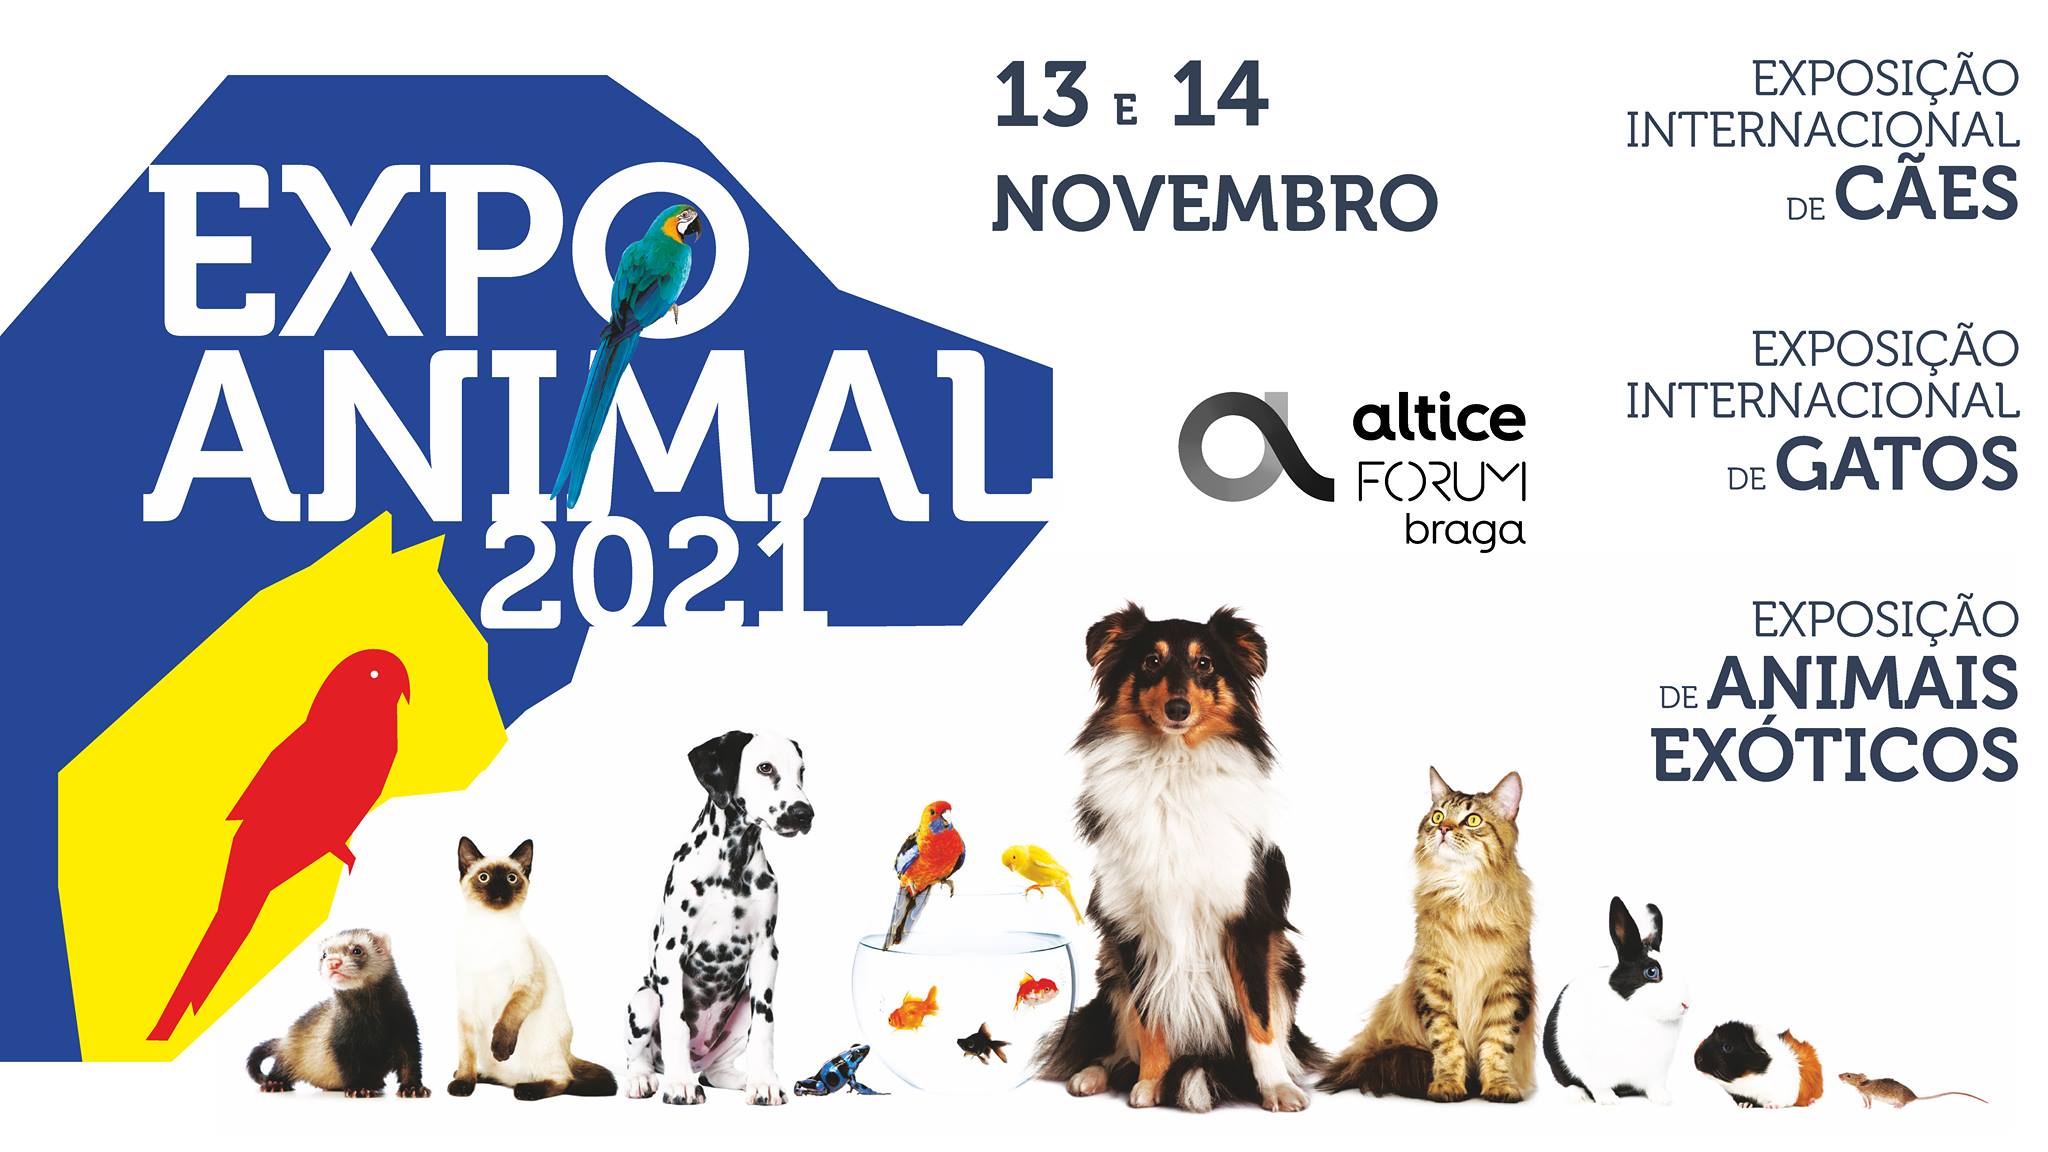 Expo Animal 2021